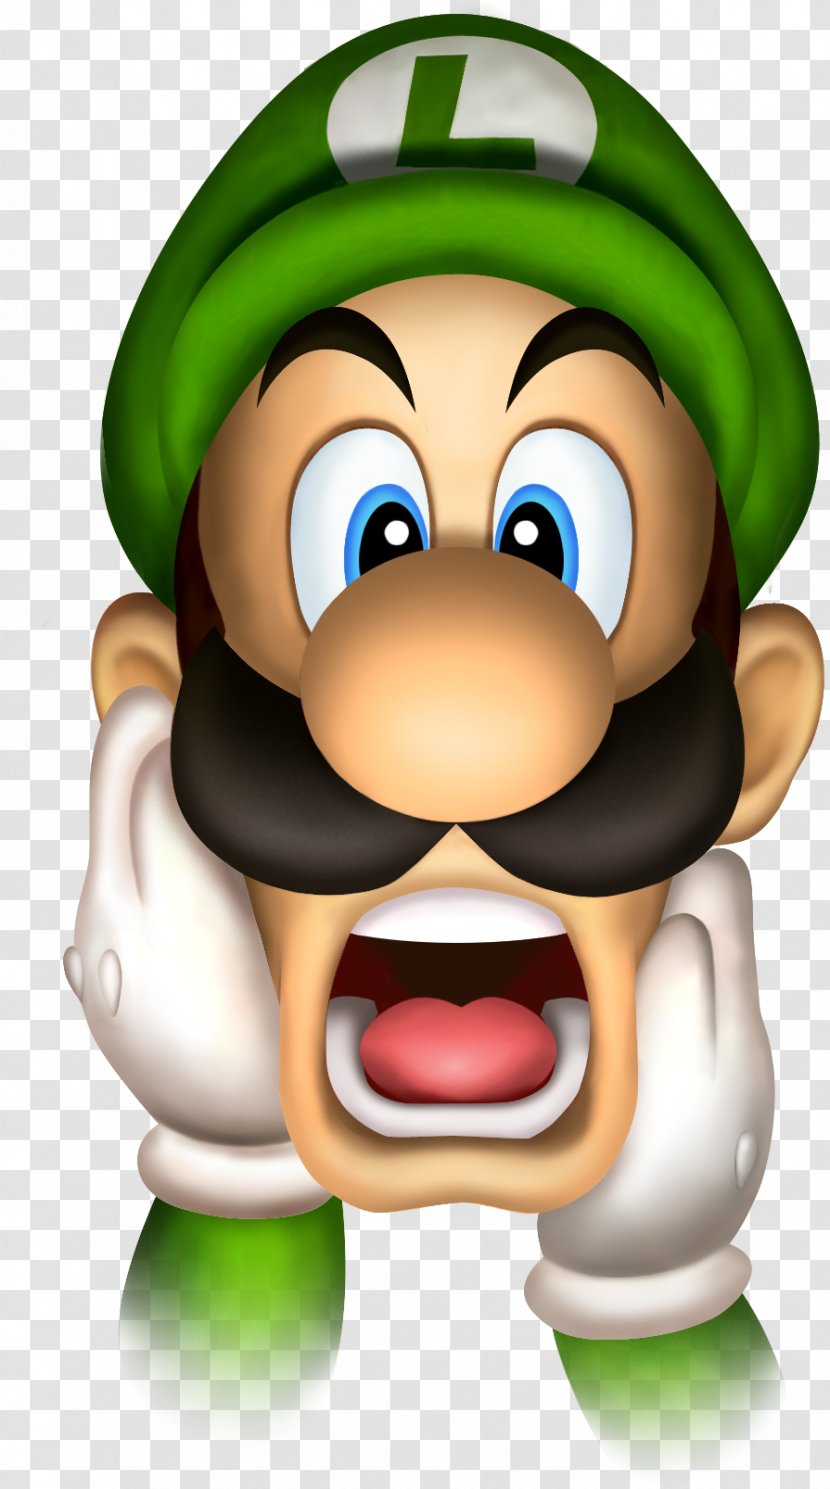 Luigi's Mansion 2 New Super Mario Bros. - Luigi Transparent PNG